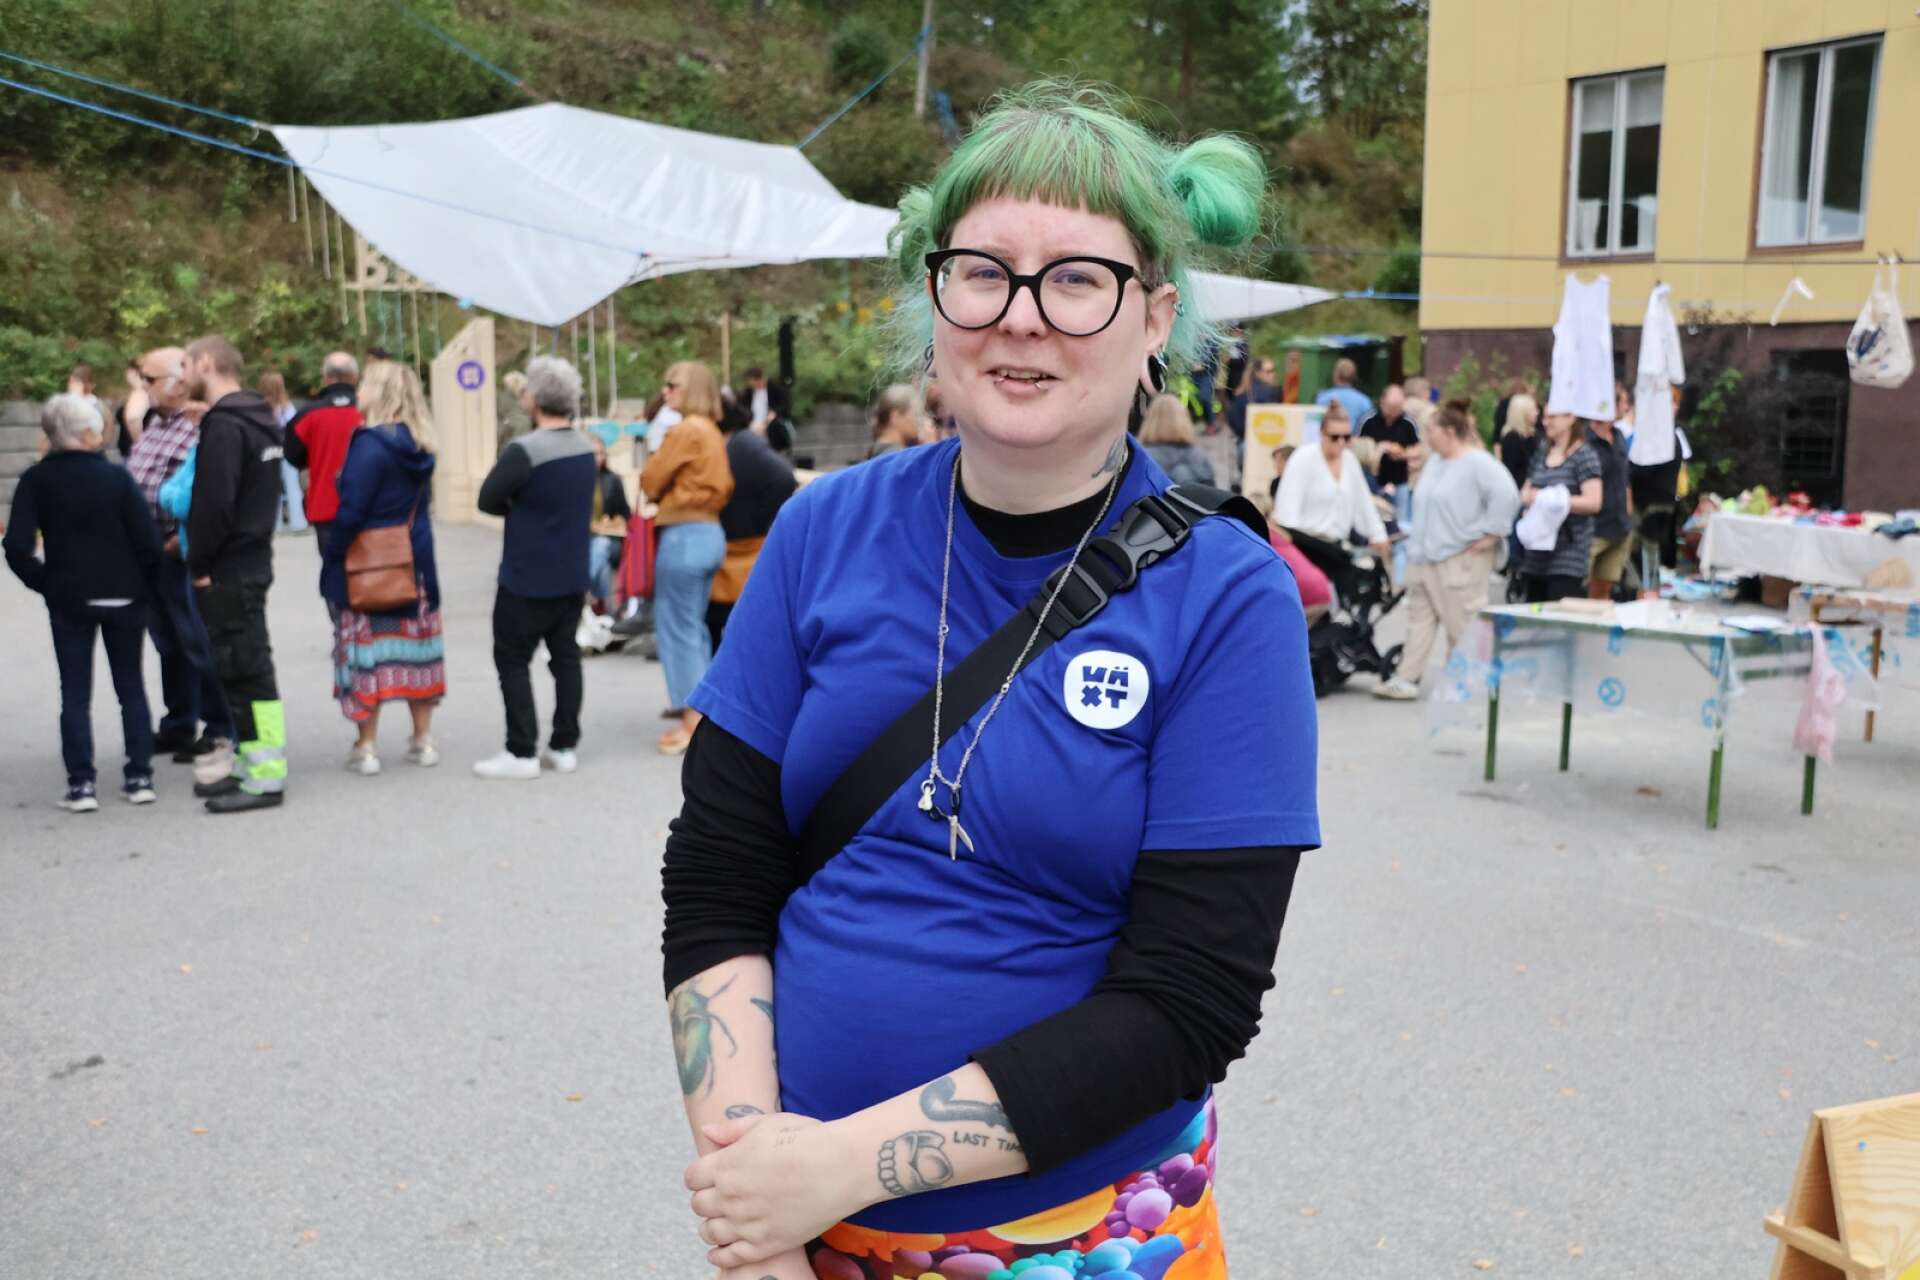 Funny Livdotter, engagerad i den ekonomiska föreningen Studio Växt, som arrangerade Byafesten med stöd av Mötesplats Steneby och Dals Långeds utvecklingsråd, kunde glädjas åt en välbesökt fest.